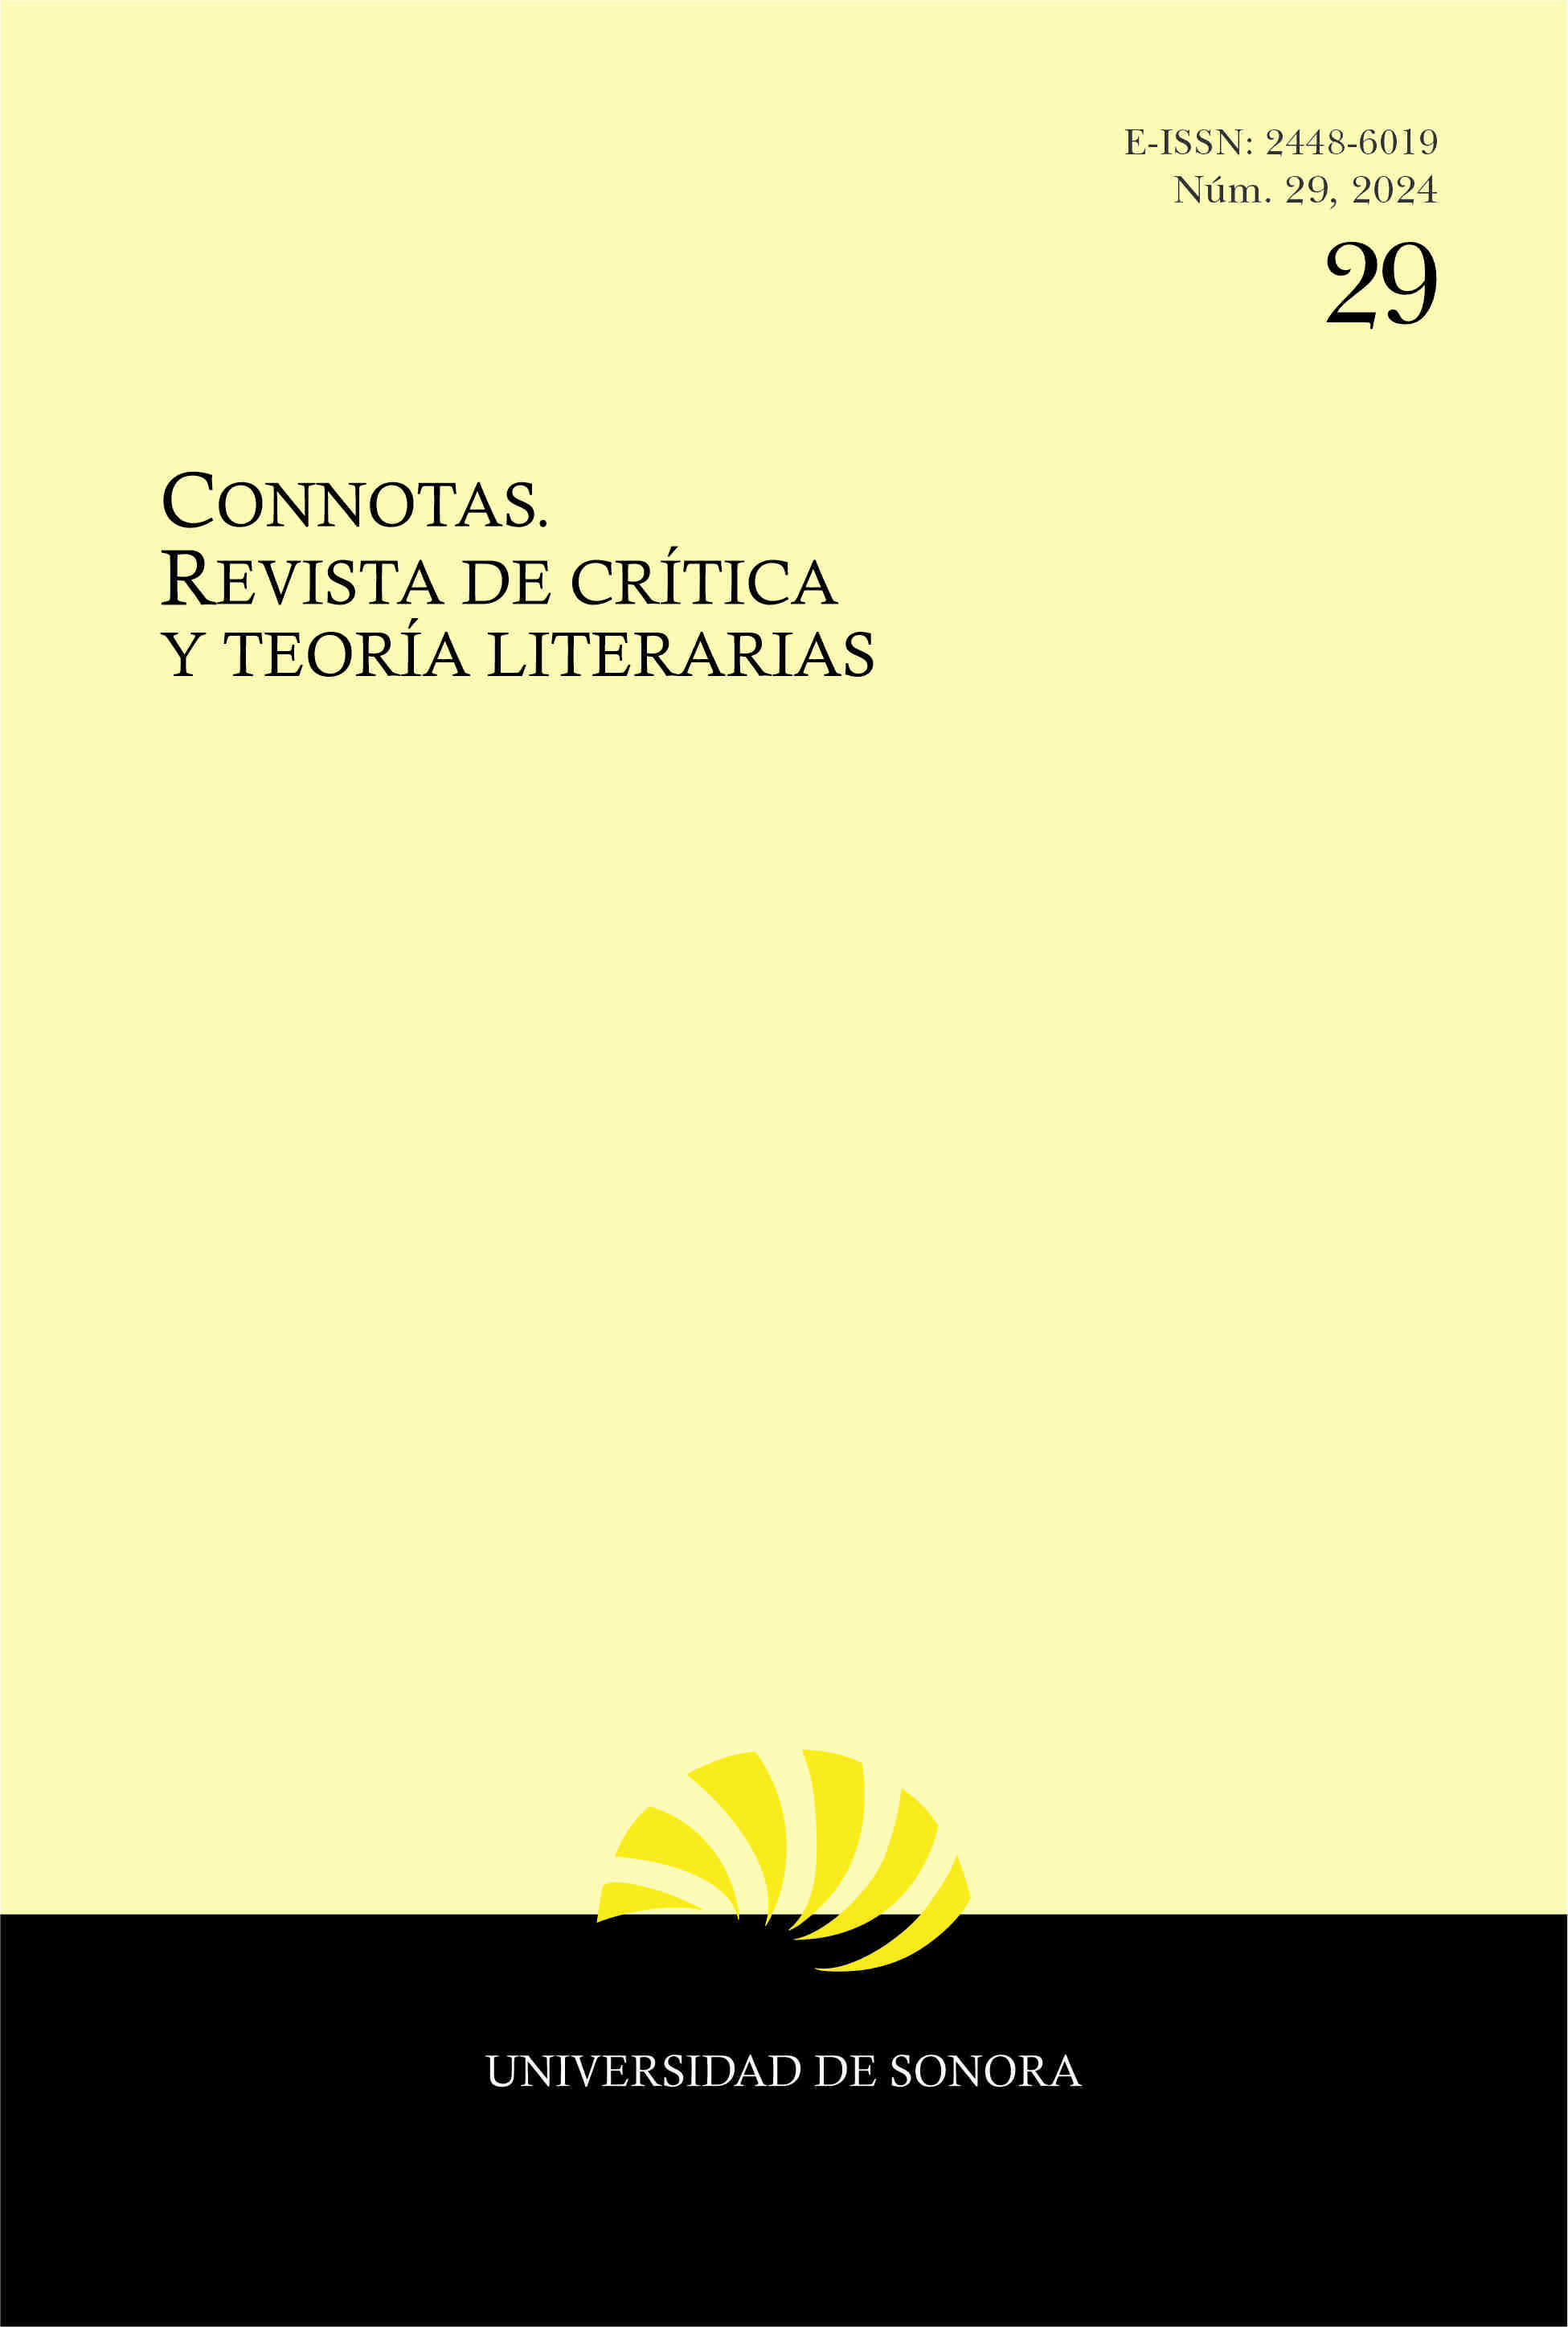 Portada del número 29 de Connotas. Revista de crítica y teoría literarias, con logo de revista e indicación de la Universidad de Sonora como entidad editora.